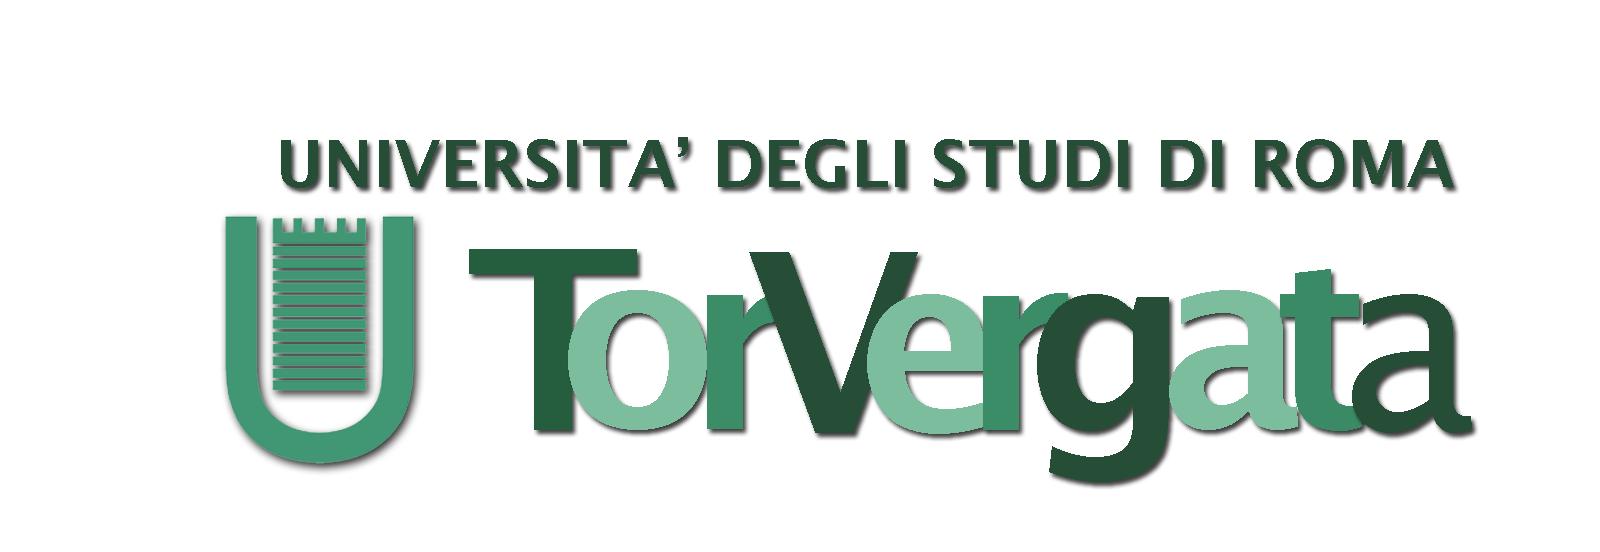 Tor Vergata Logo photo - 1